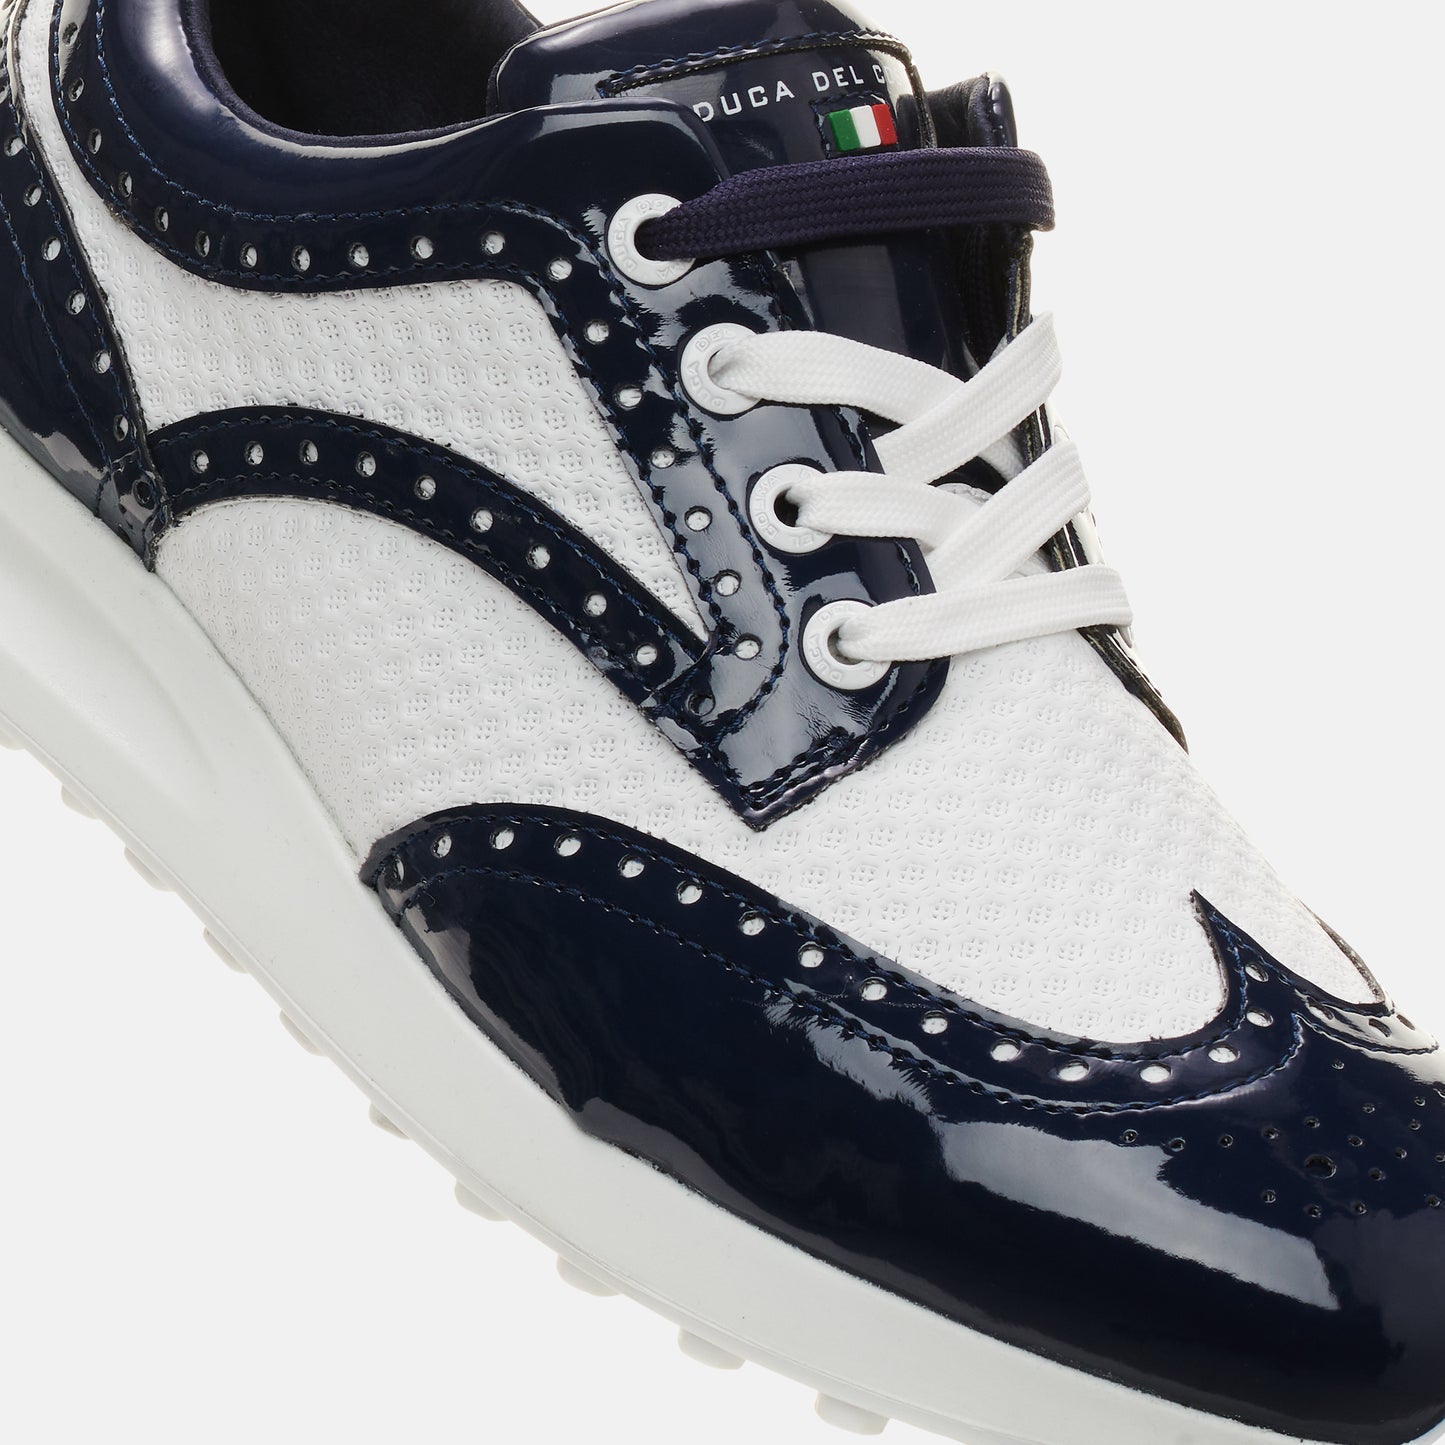 spikeless golf shoes women